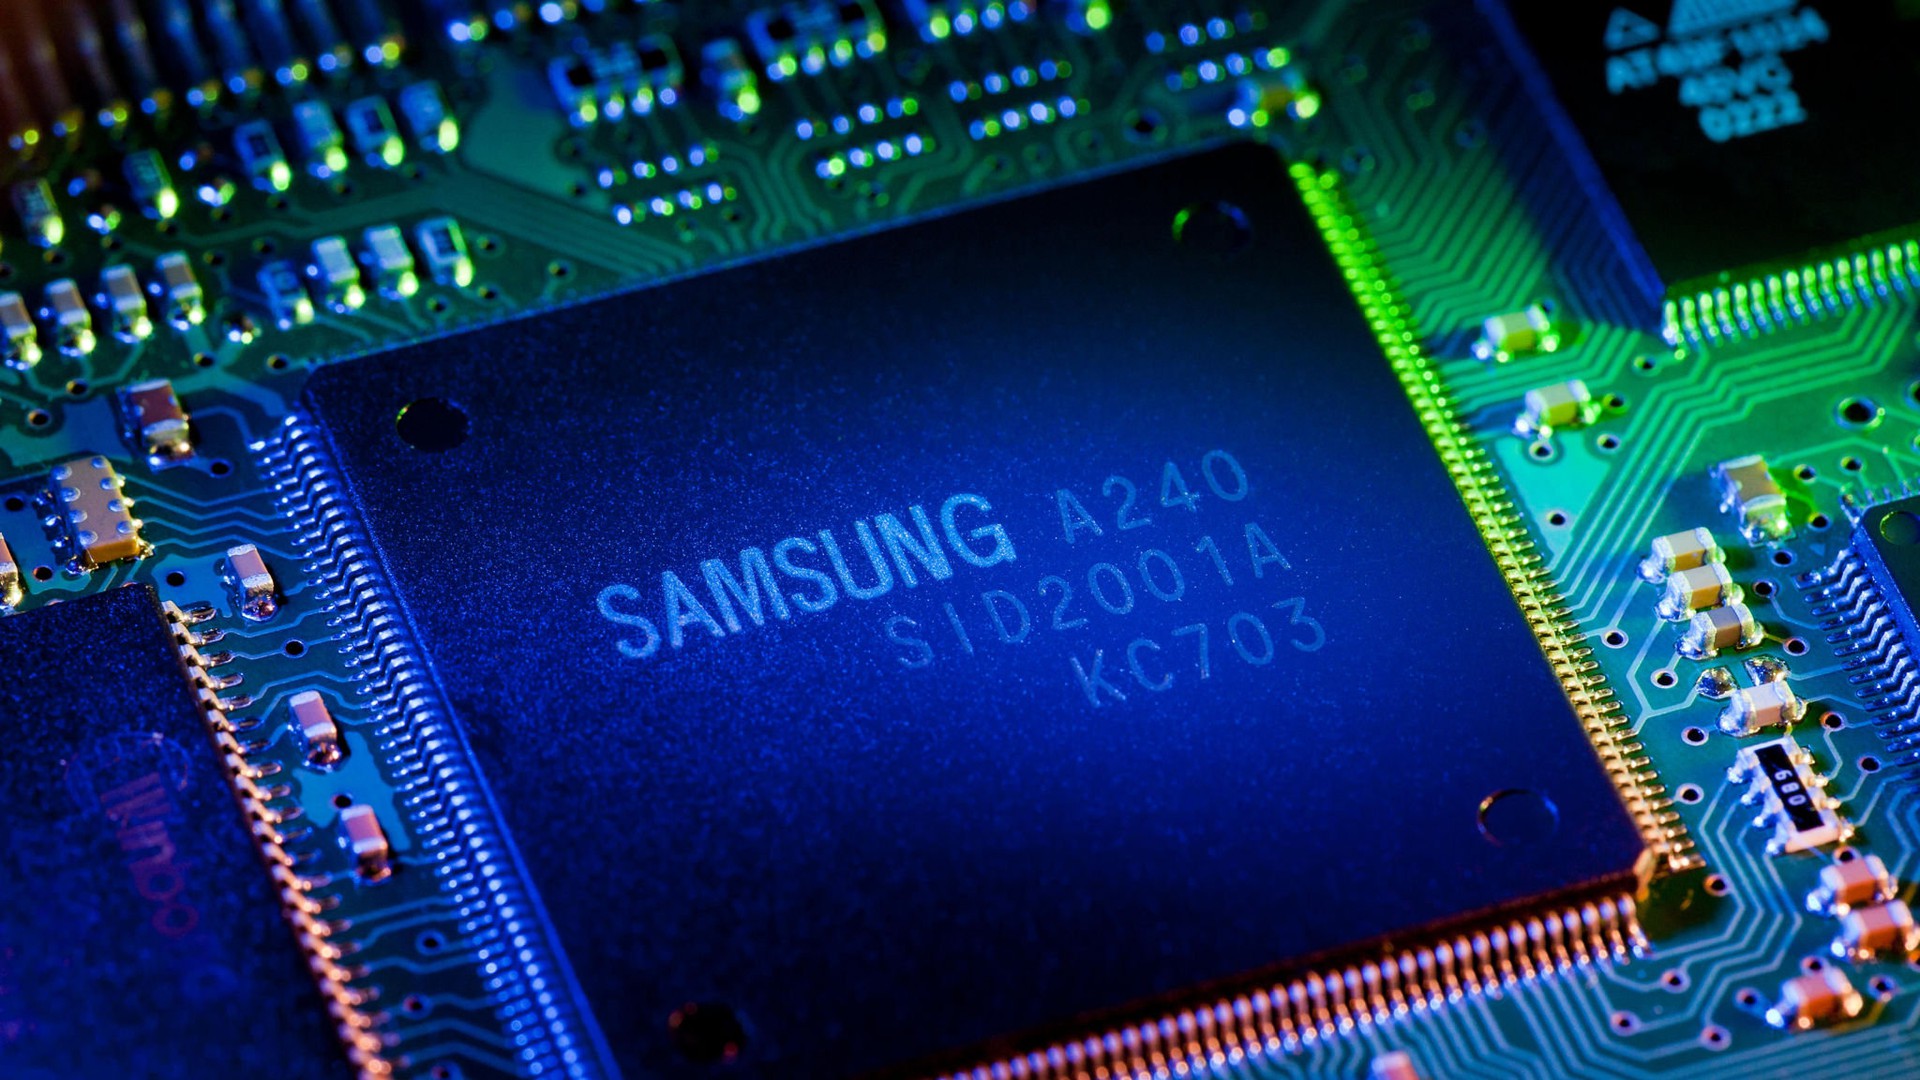 Giới phân tích cho rằng Samsung nên thâu tóm một số công ty trong lĩnh vực sản xuất chip. Ảnh: FT.